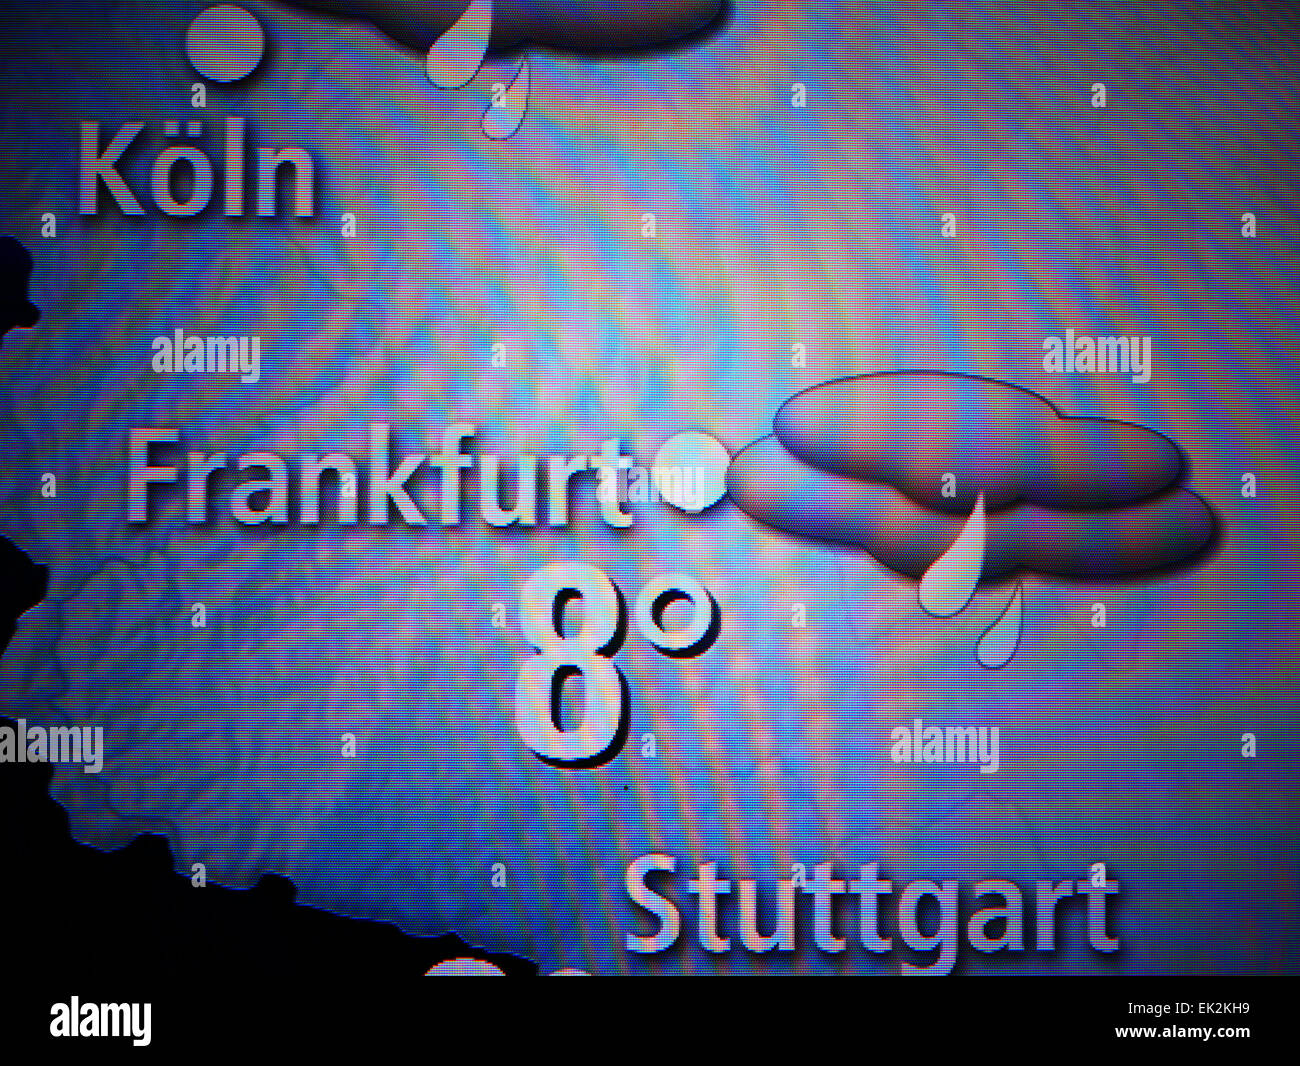 Alemania Frankfurt am Main meteorológica predicción meteorológica Foto de stock